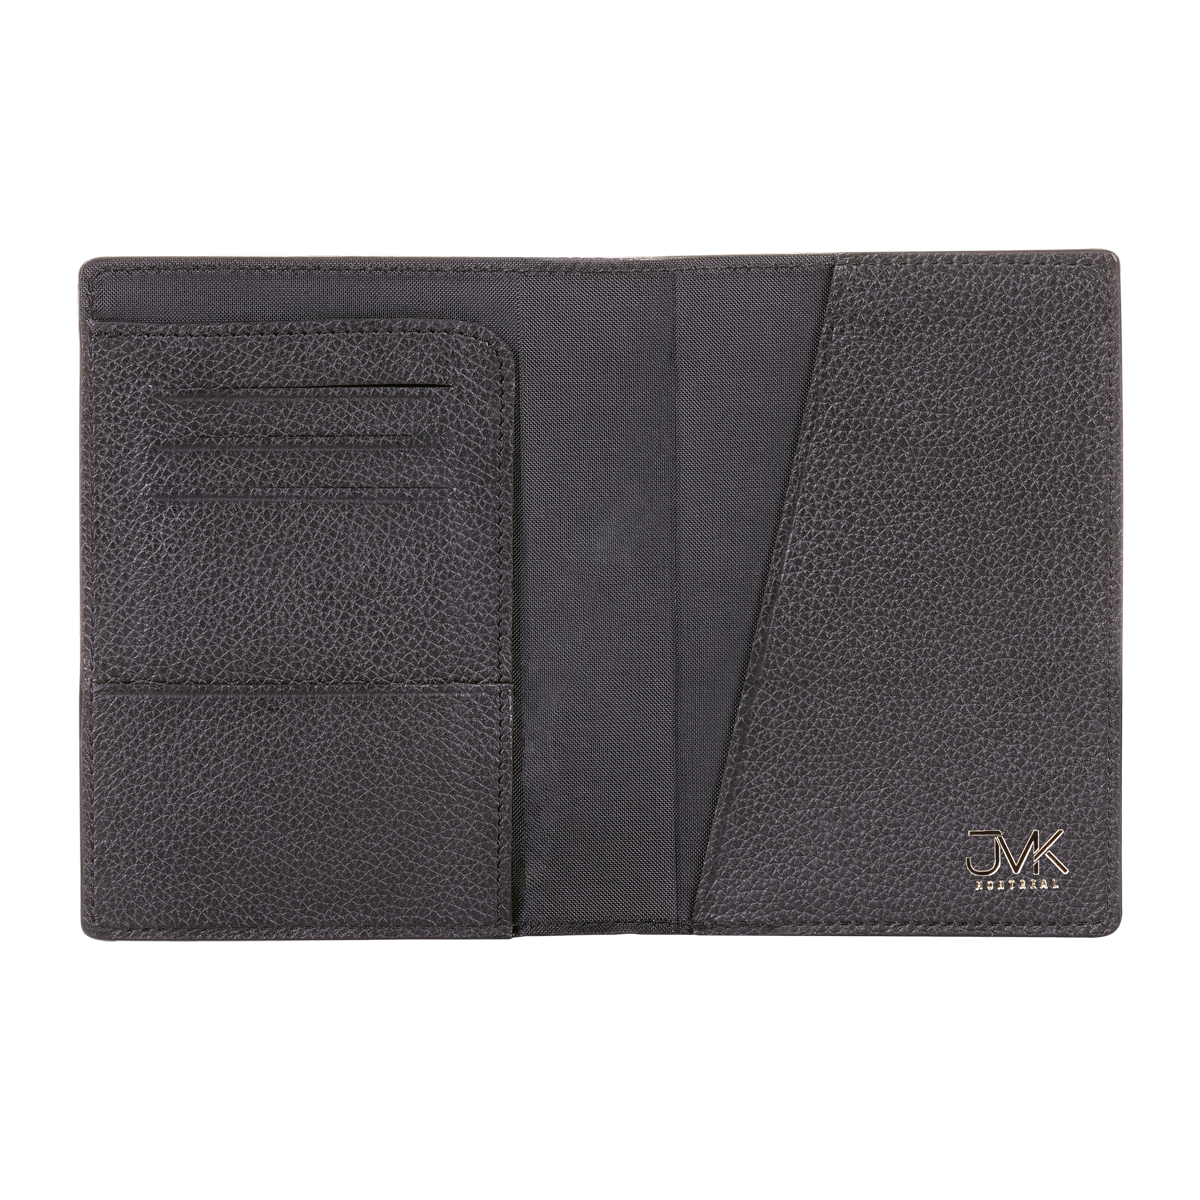 Passport Holder, Grain Leather Black, MAISON JMK-VONMEL Luxe Gifts